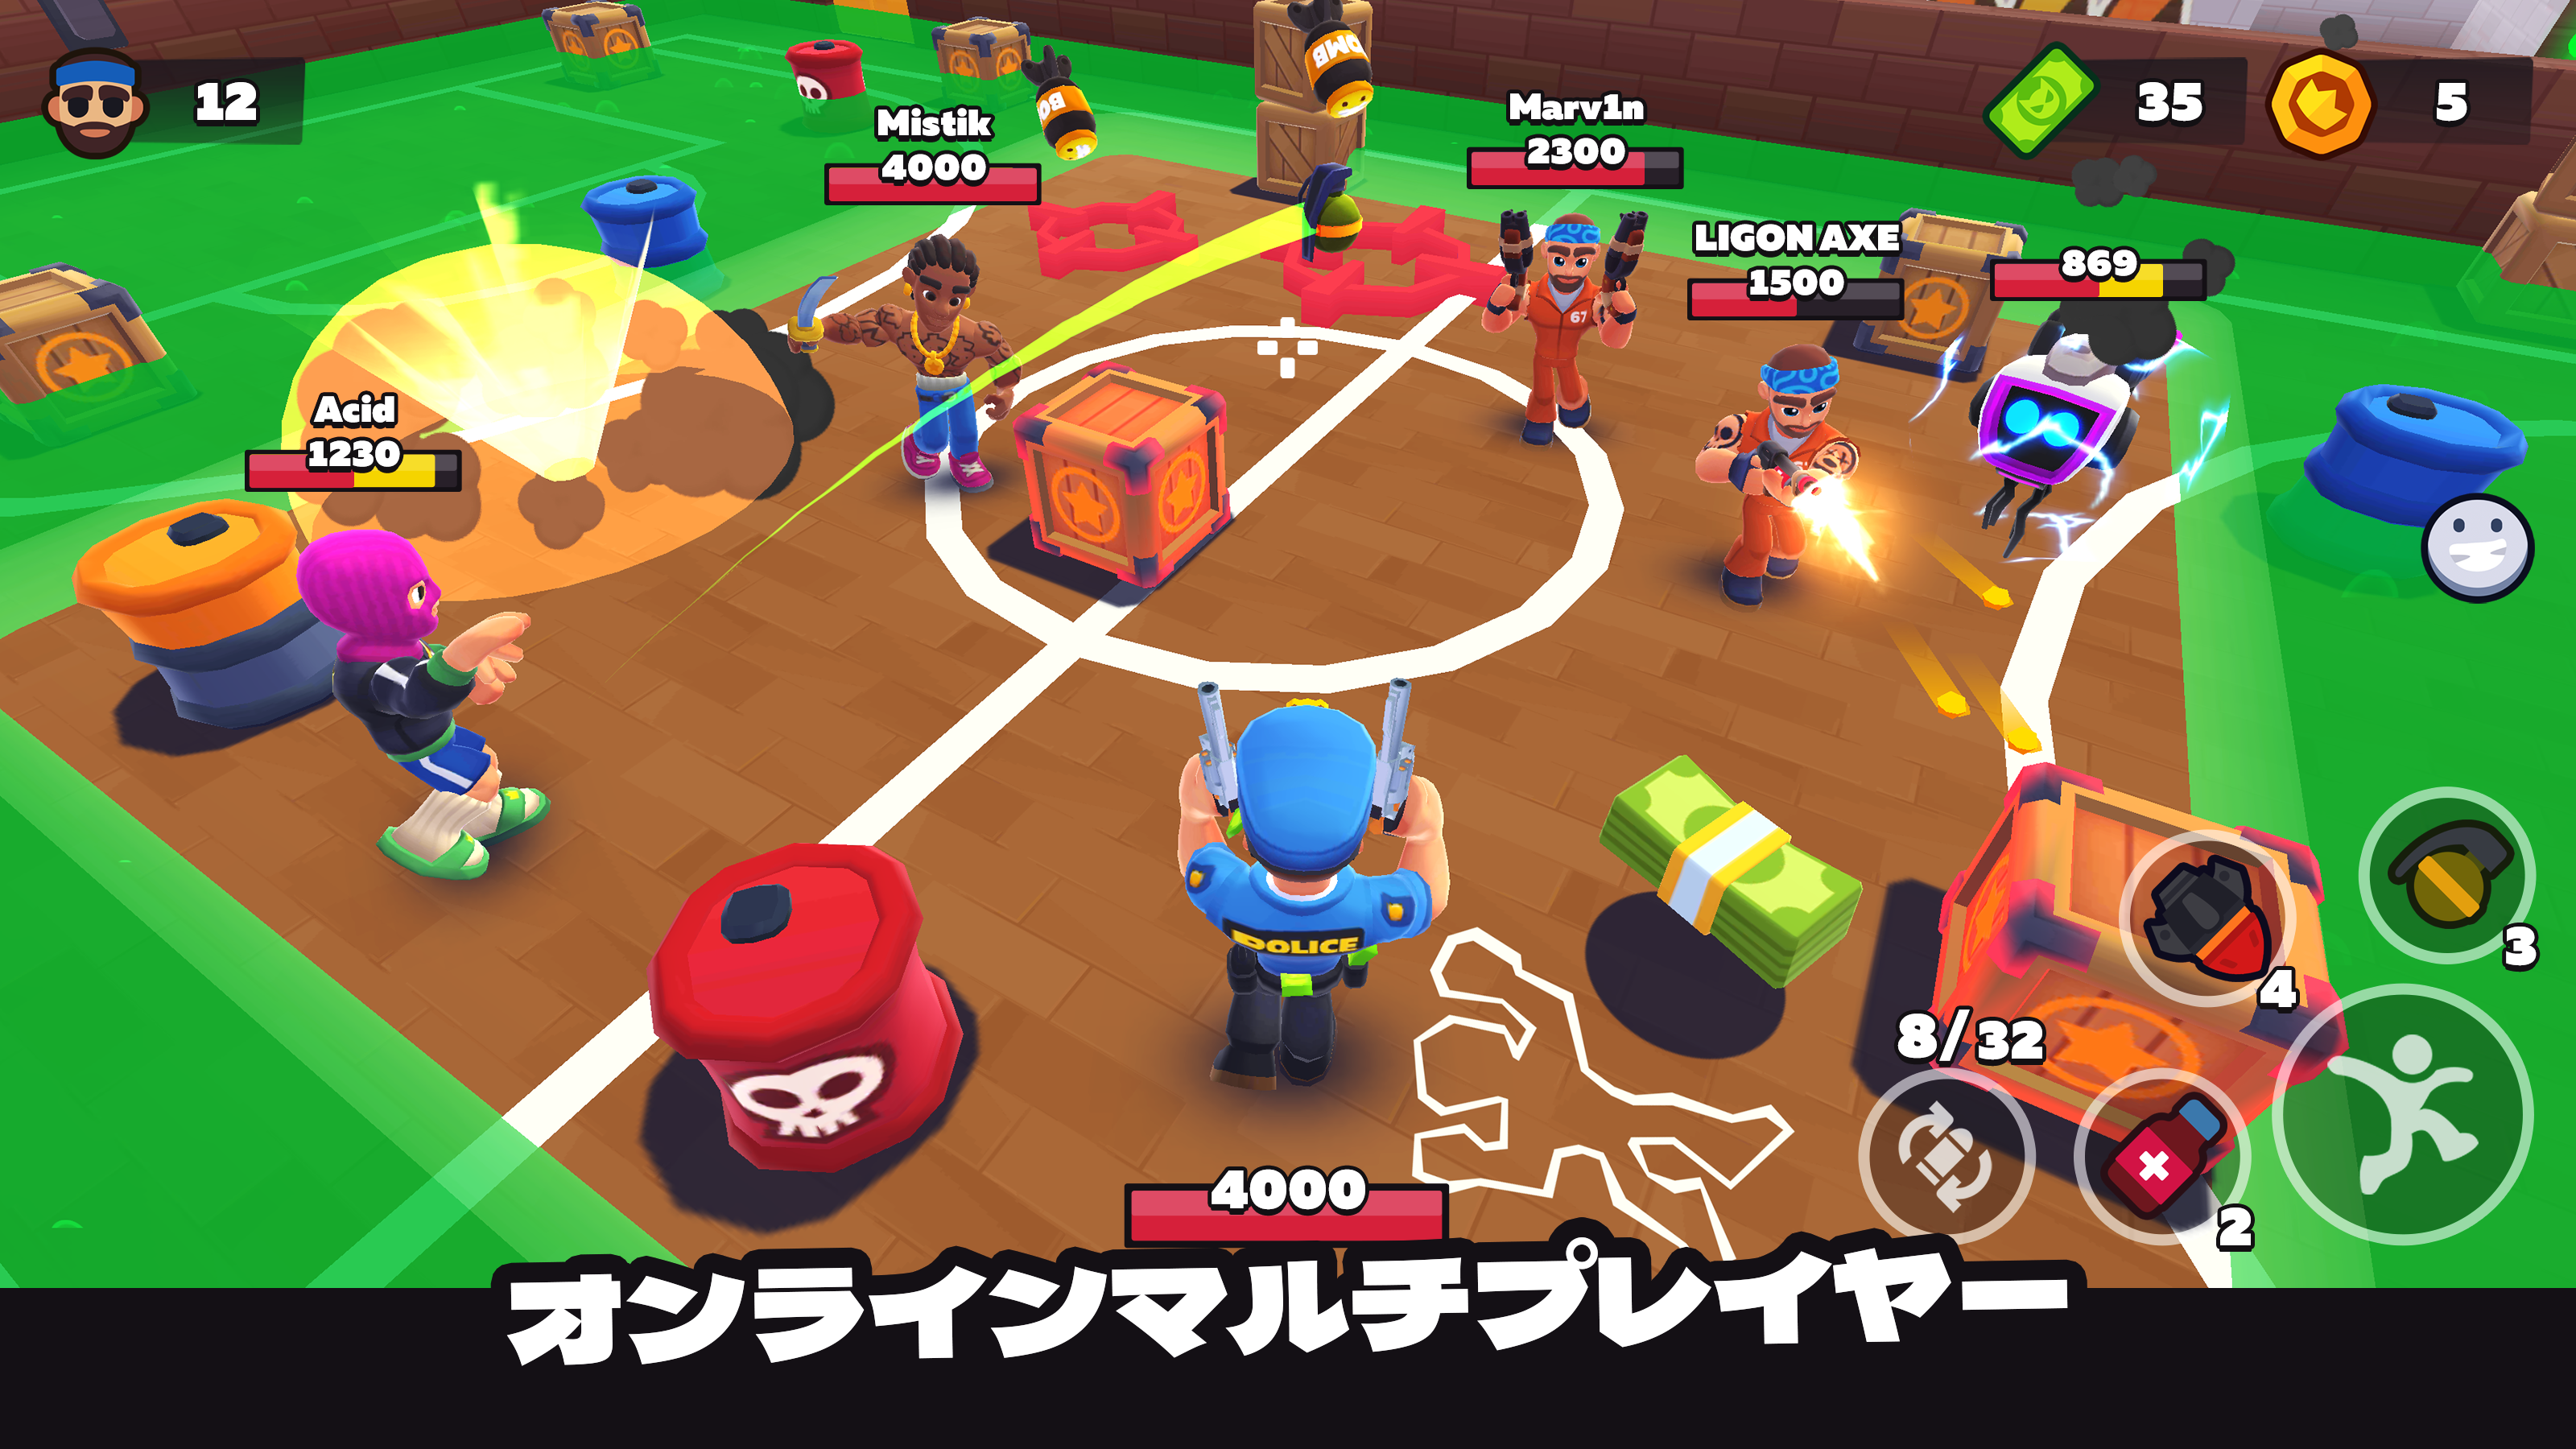 Screenshot 1 of HAPPY ZONE - バトルロワイヤル たたかうゲーム 0.70